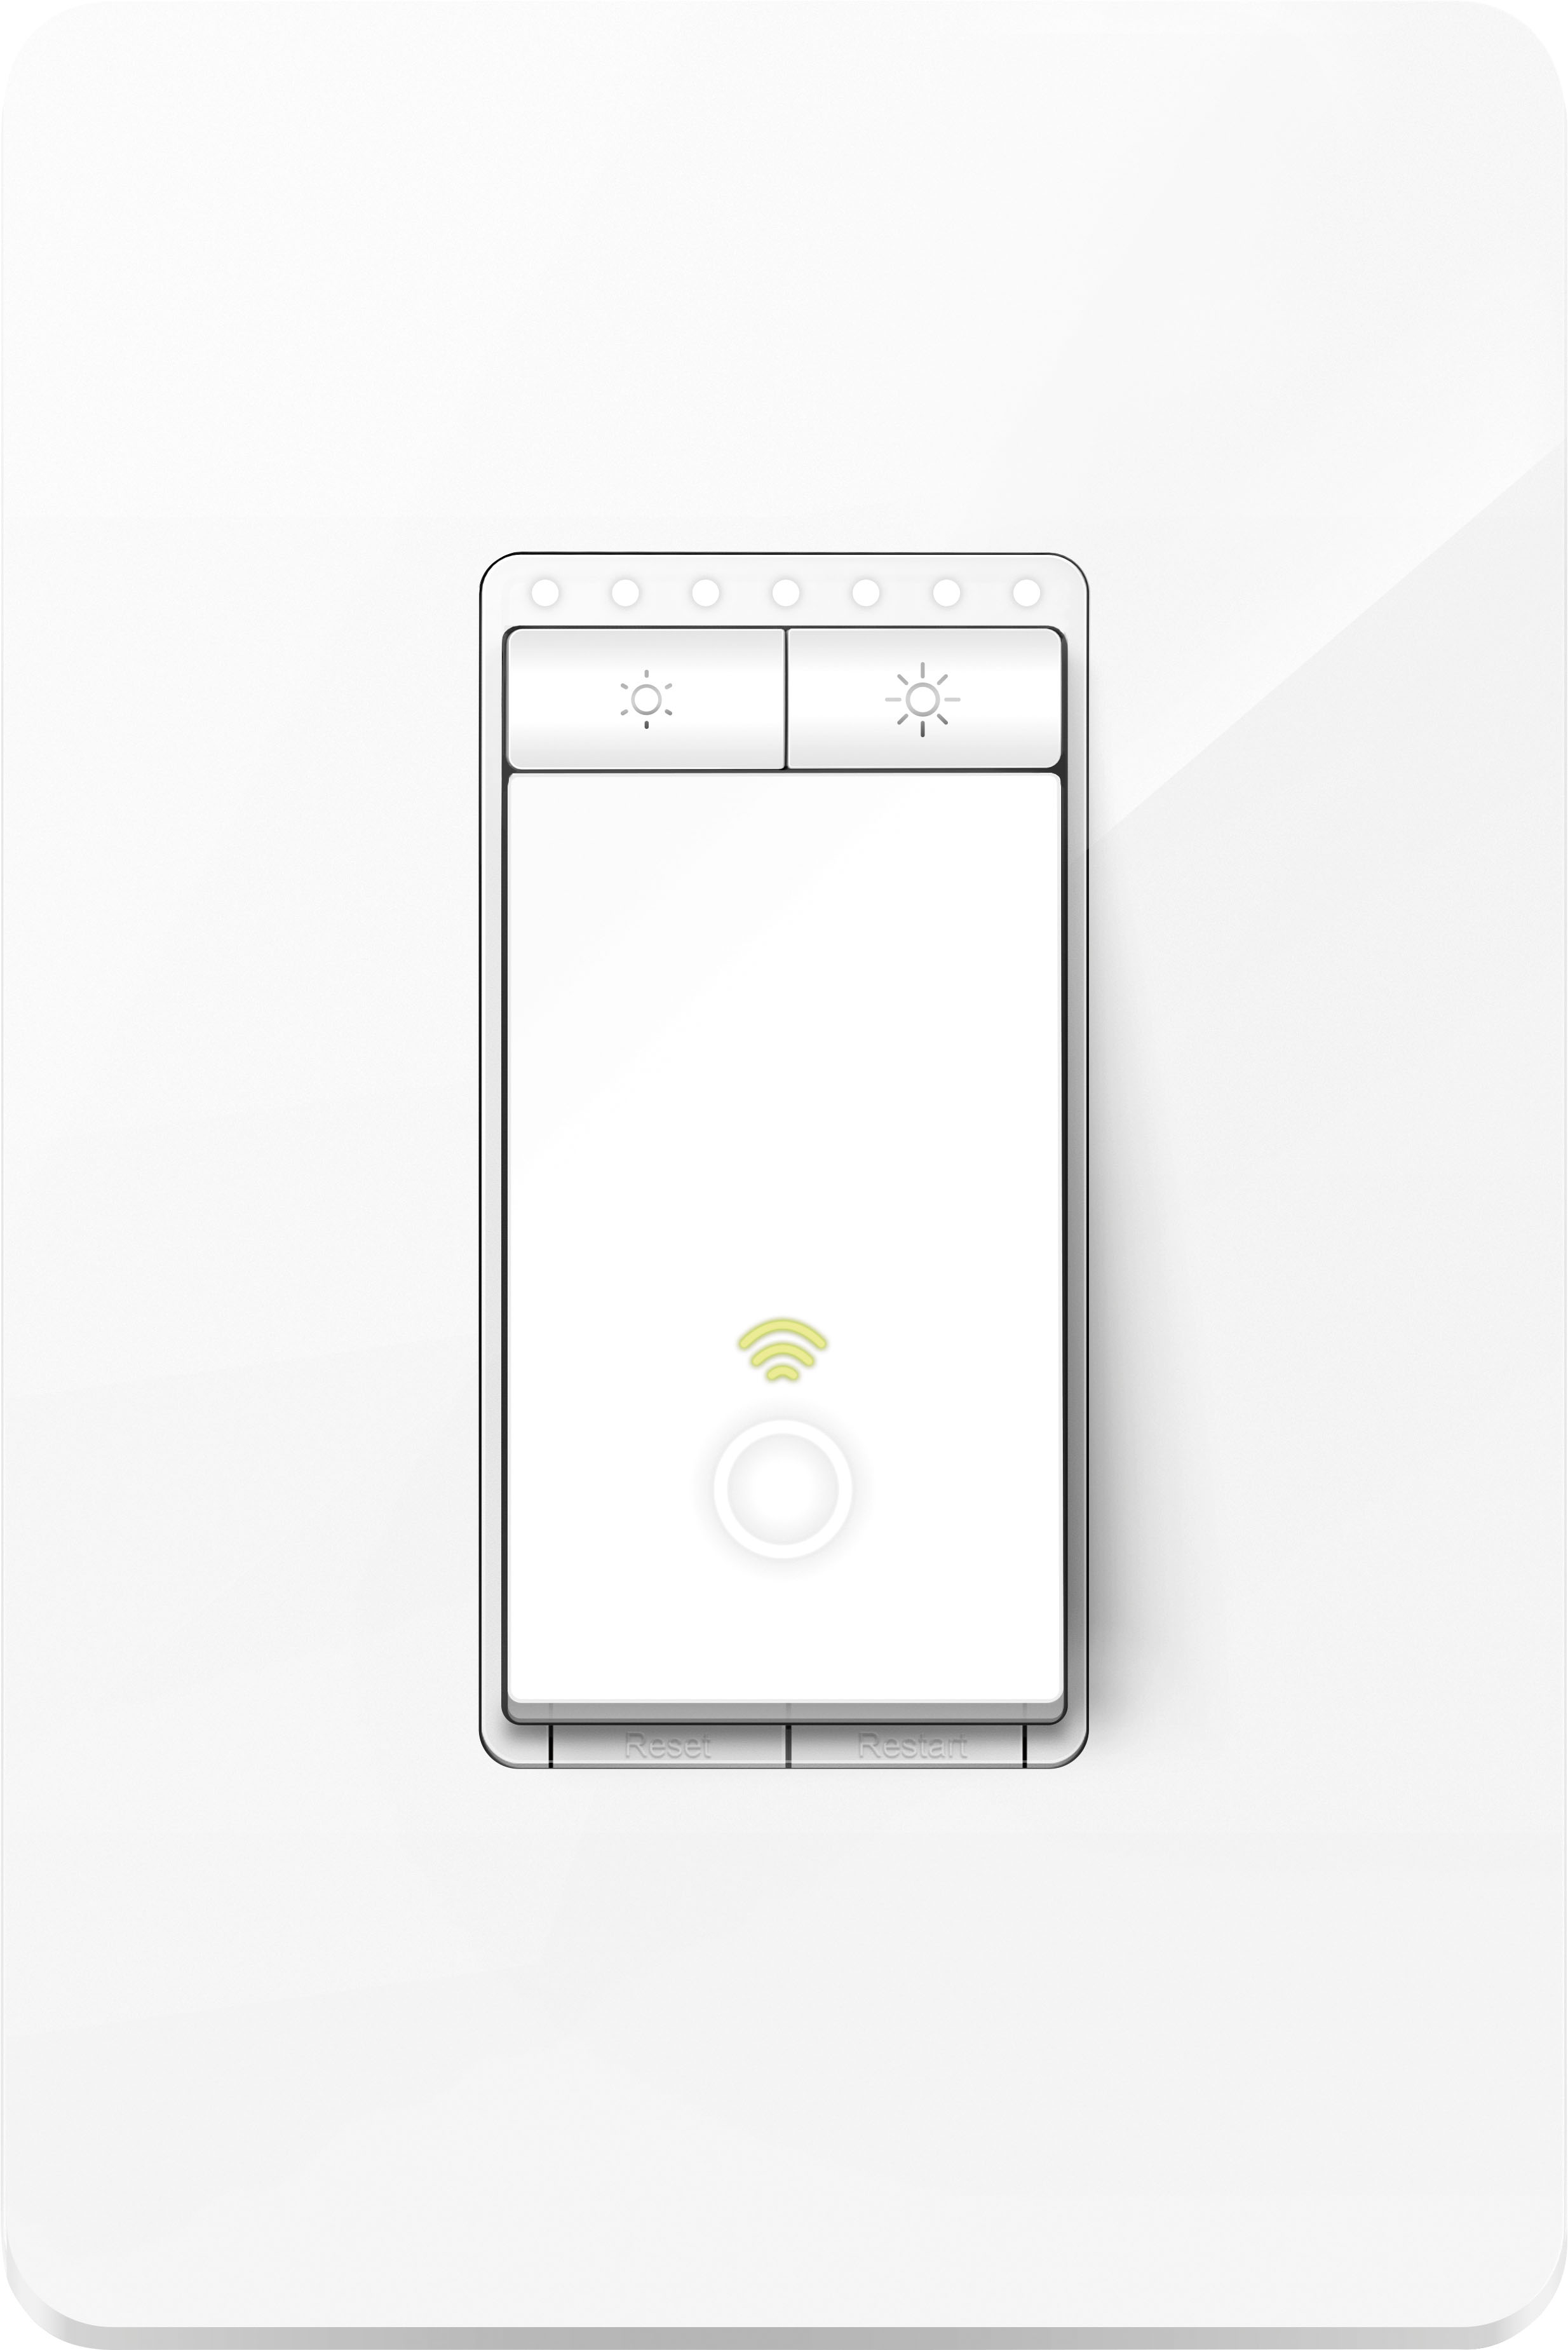 Alert Hvile Begrænsning TP-Link Kasa Wi-Fi Smart Light Dimmer Switch White HS220 - Best Buy